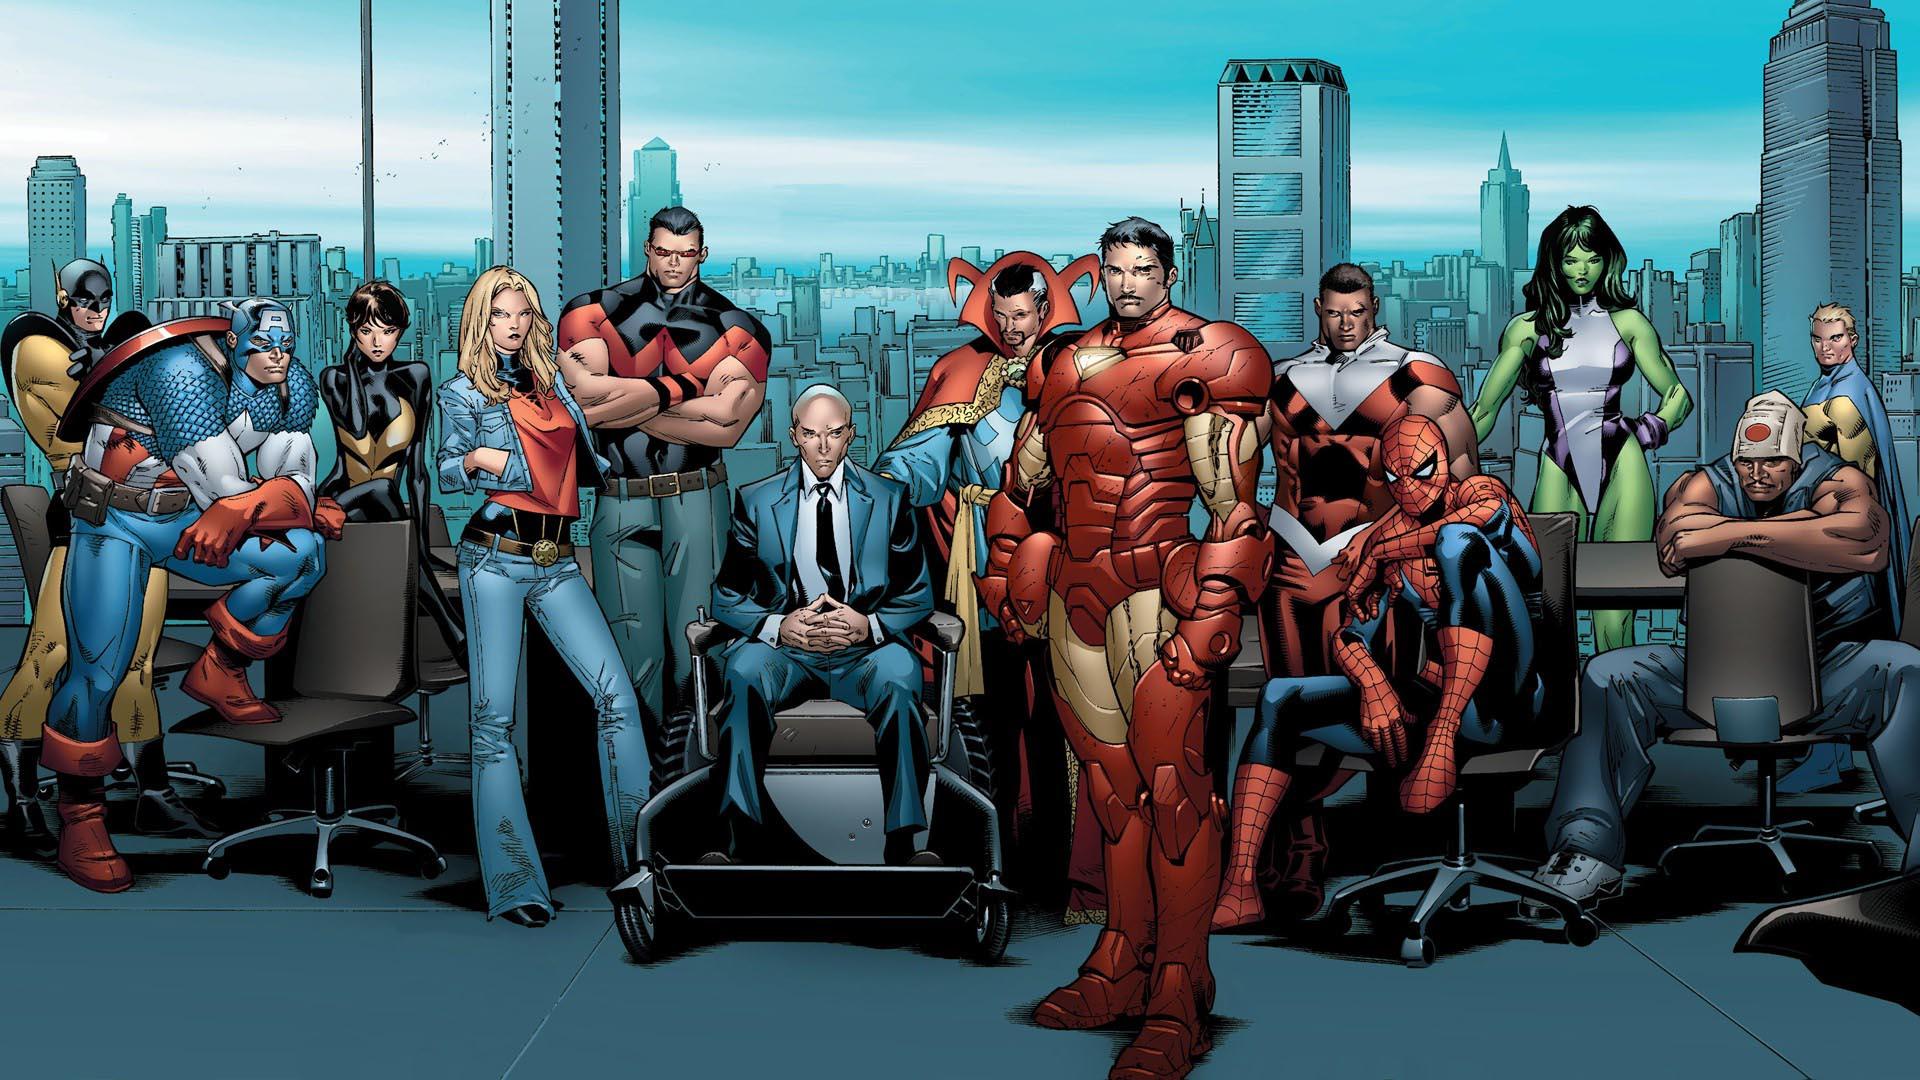 The Avengers Meet the Xmen